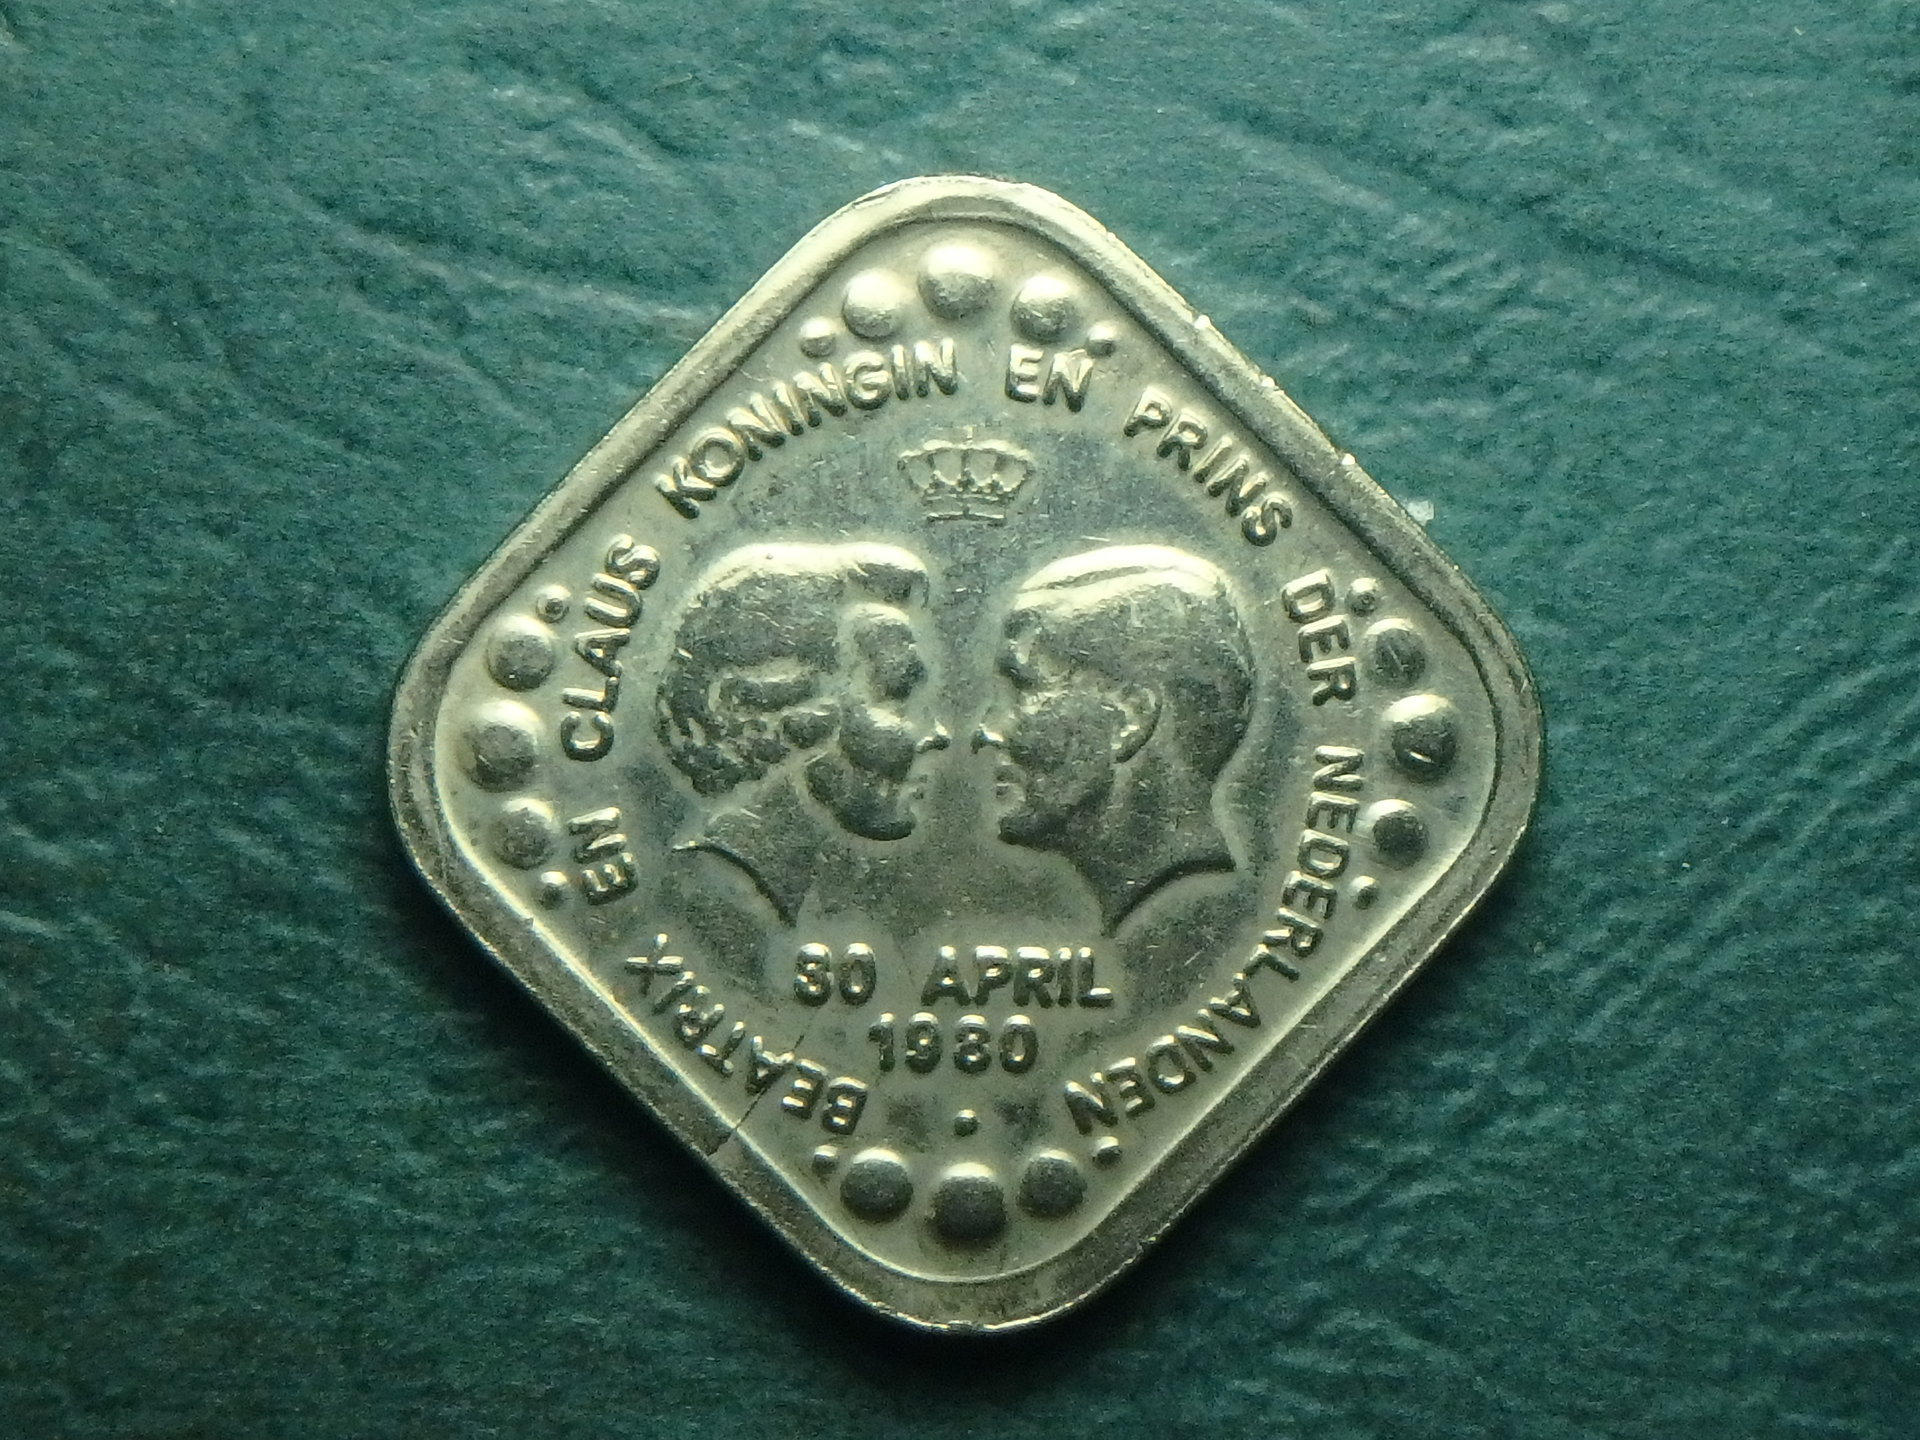 1980 NL 5 c token obv.JPG